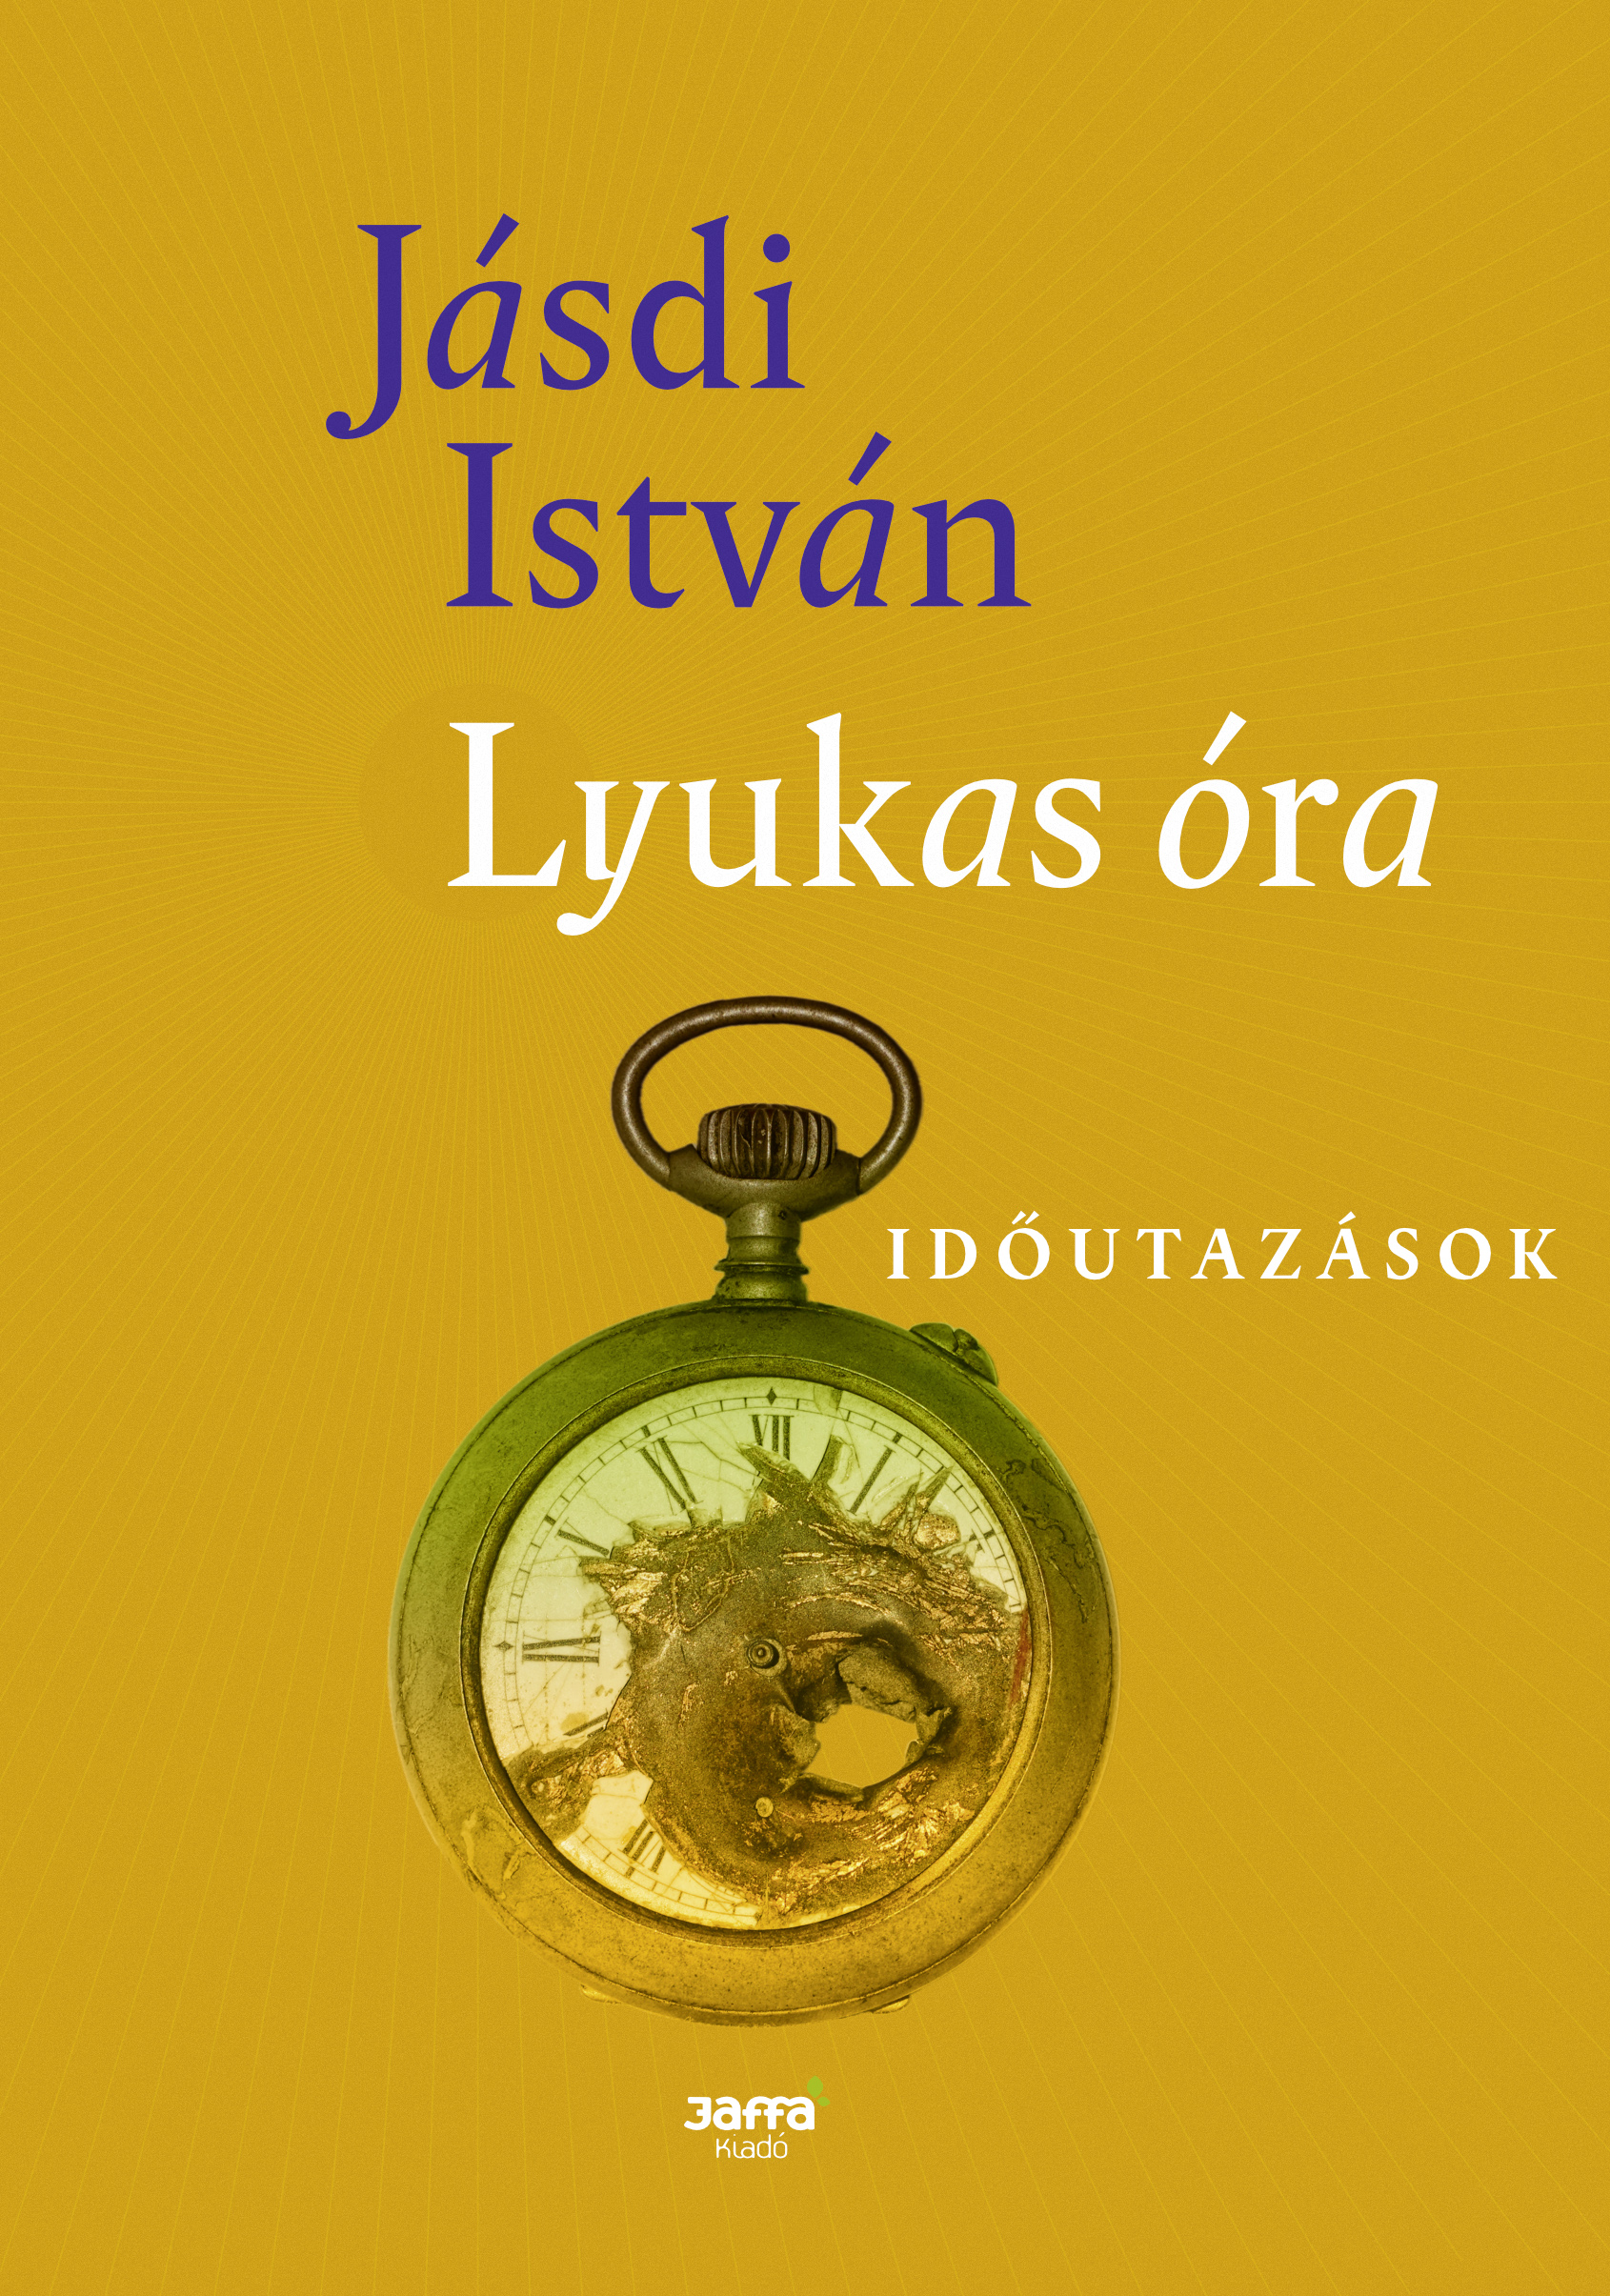 Lyukasóra - Jásdi István | 